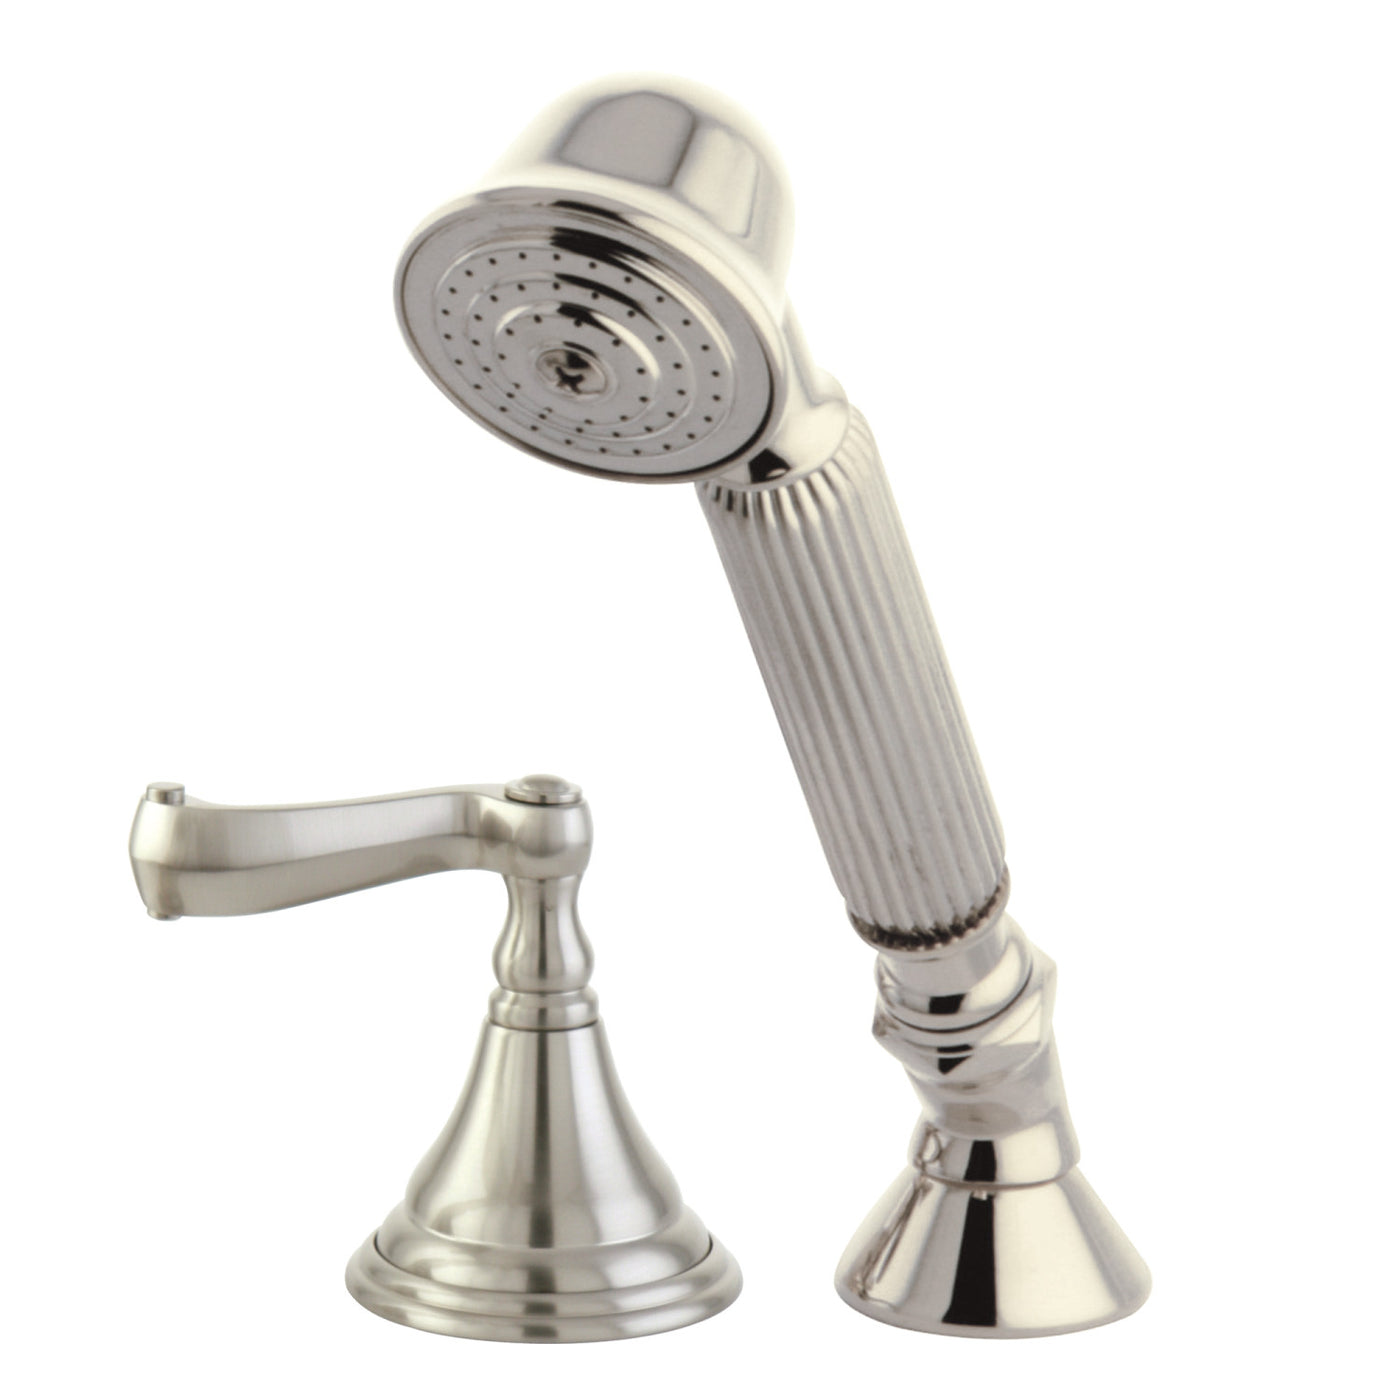 Elements of Design ESK5368FLTR Deck Mount Hand Shower with Diverter for Roman Tub Faucet, Brushed Nickel